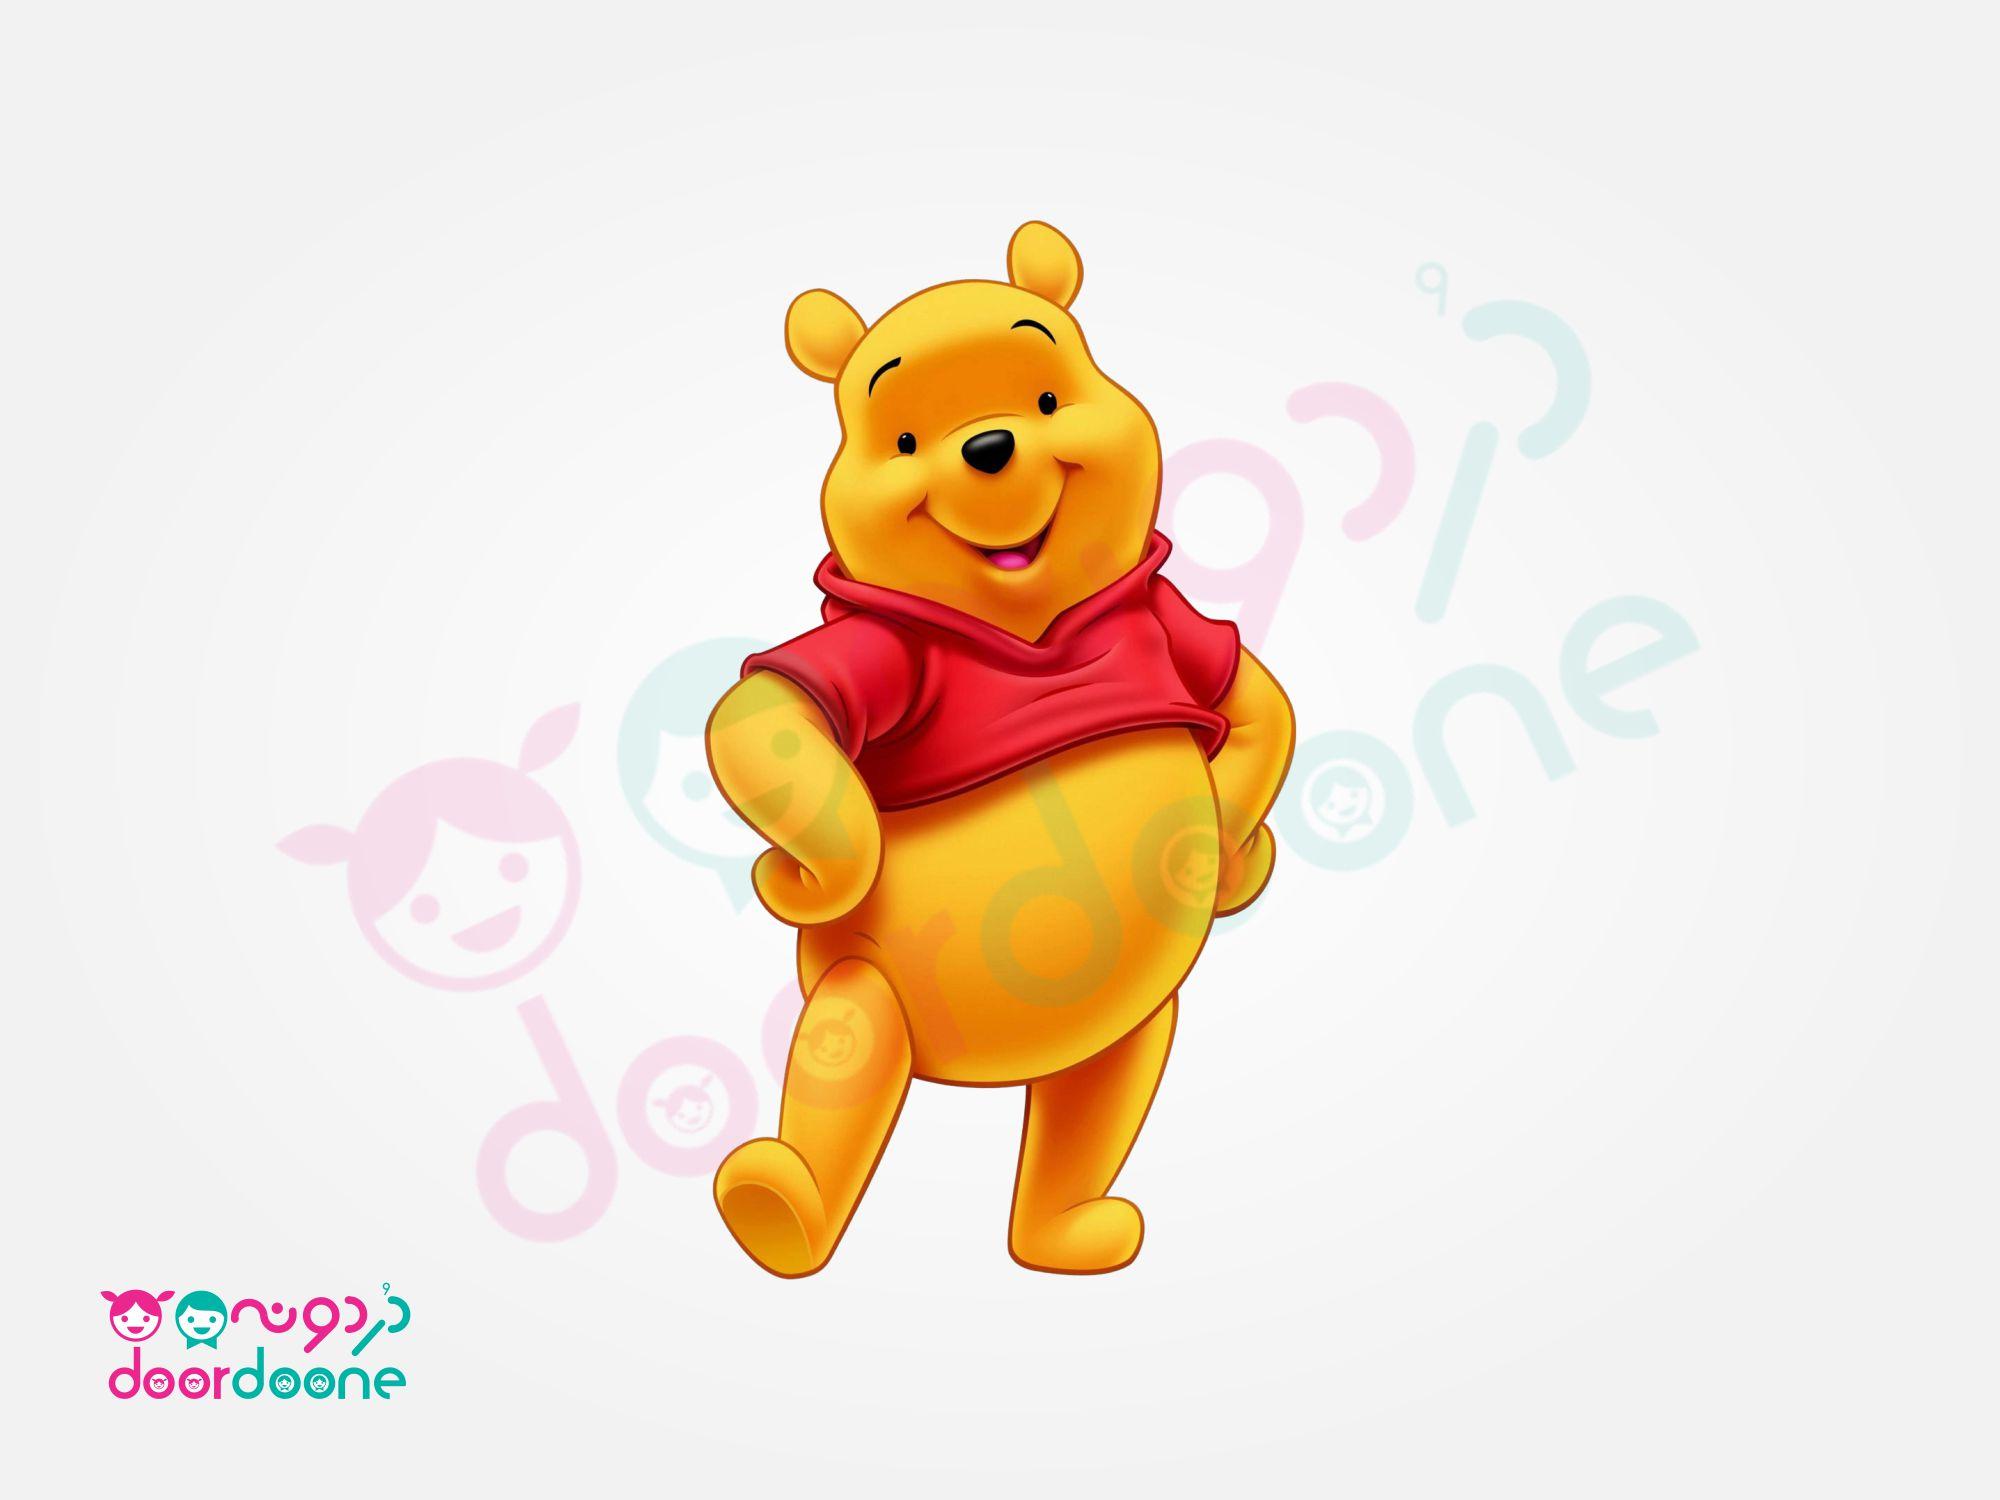 پک استند وينی پو (Winnie the Pooh)